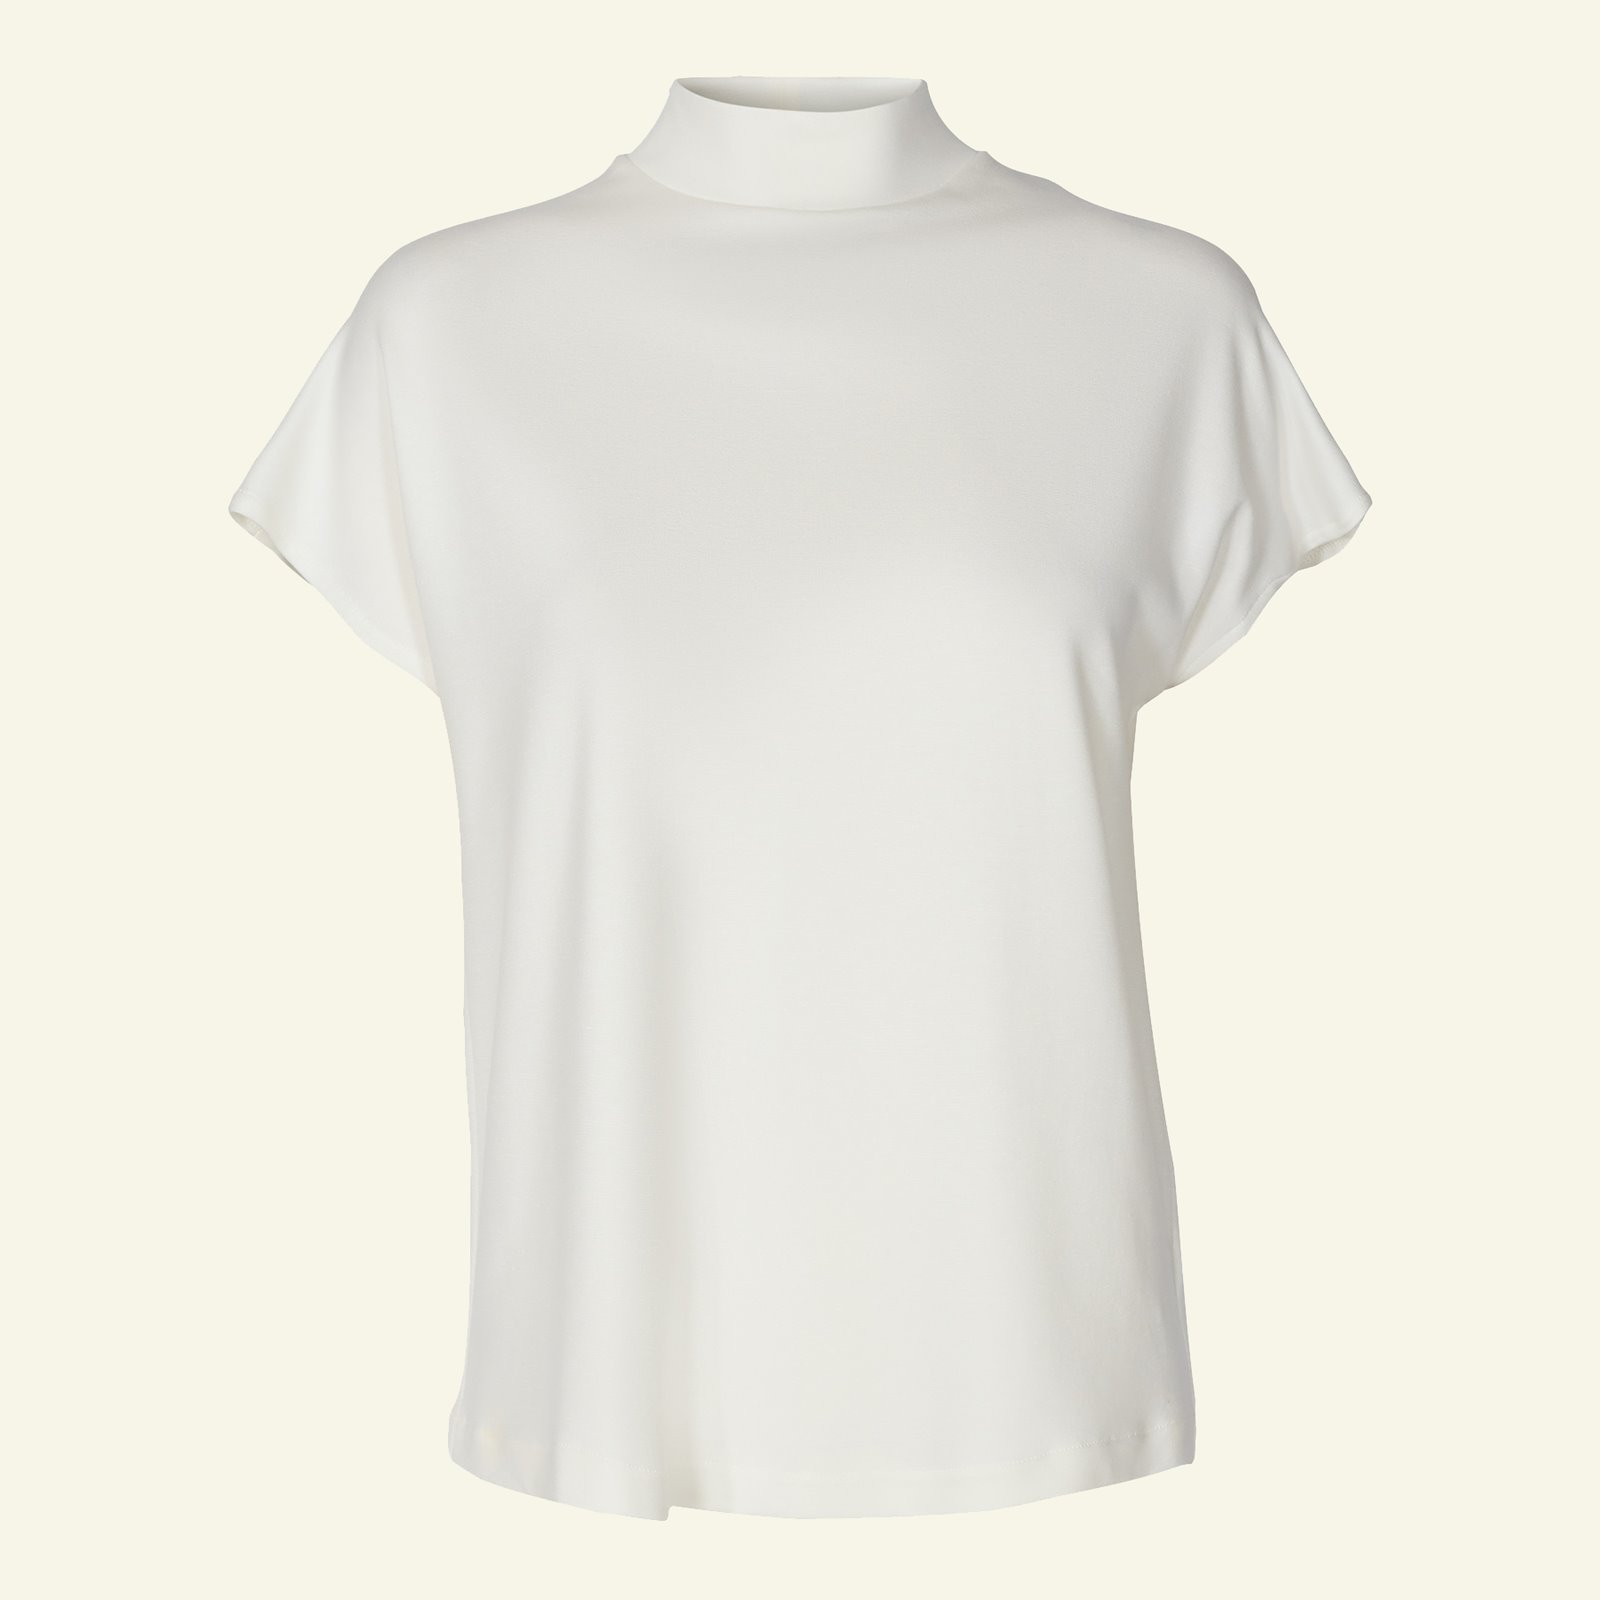 længes efter Bliv Continental T-shirt og kjole med høj hals | Selfmade® (STOF&STIL)